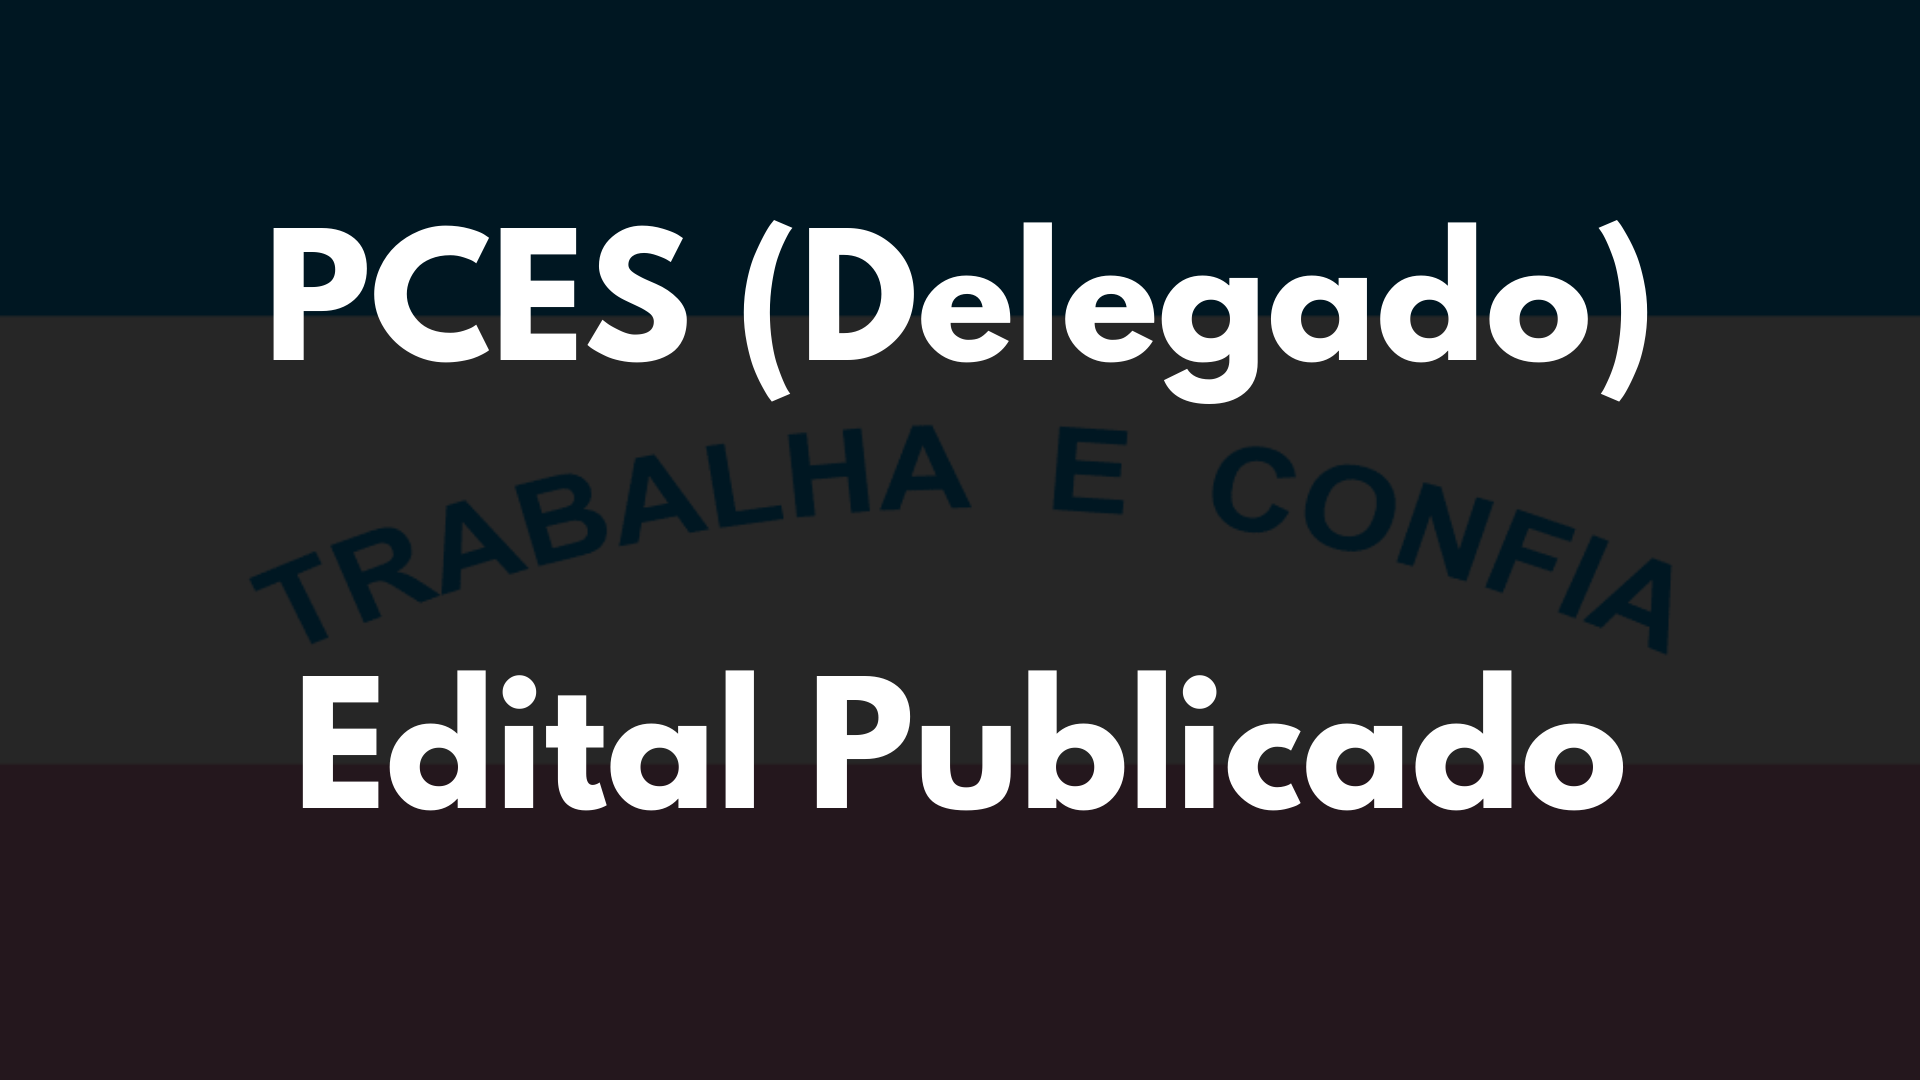 EDITAL PUBLICADO: PCES DELEGADO 2022